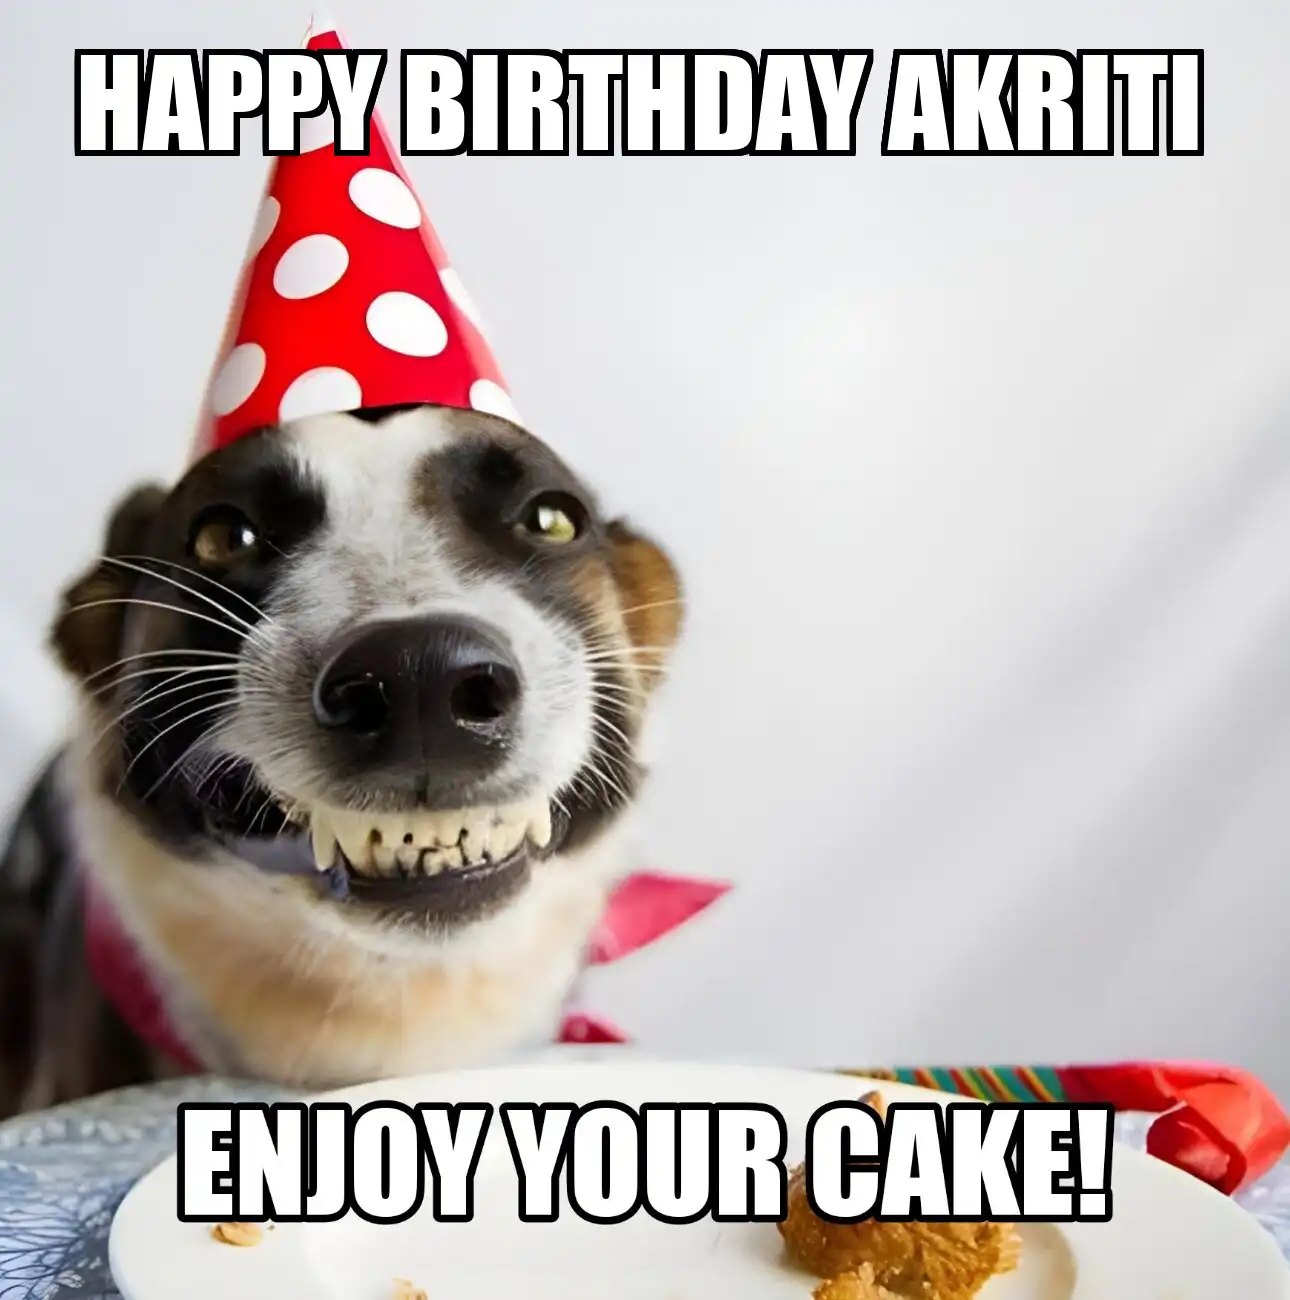 Happy Birthday Akriti Enjoy Your Cake Dog Meme